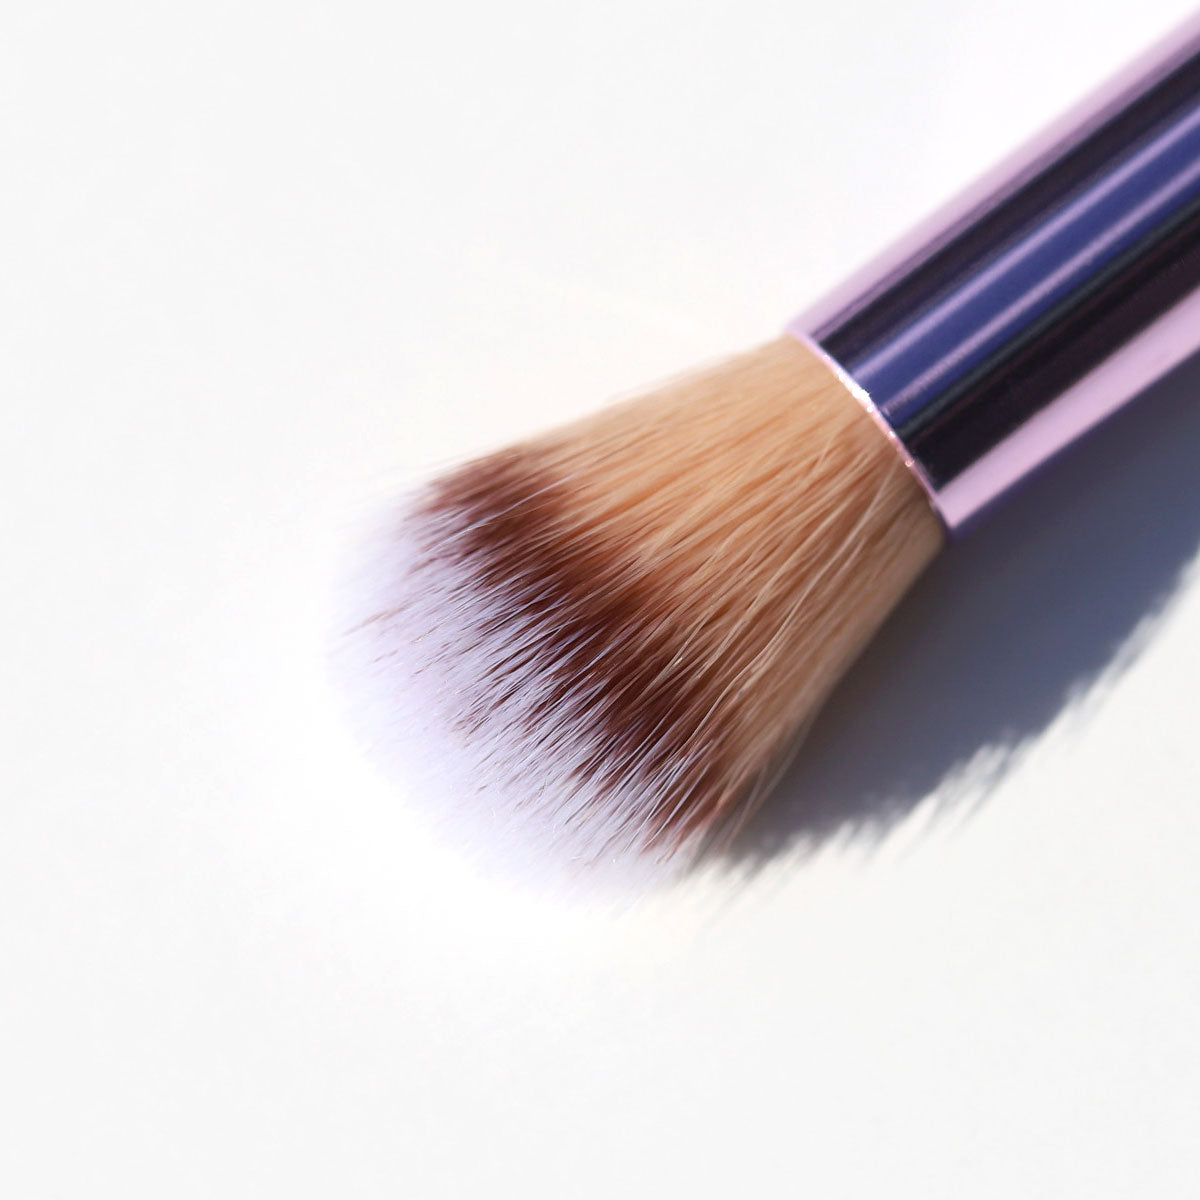 purple eyeshadow brushes for blending, shading, contouring - eye brush set - half caked makeup